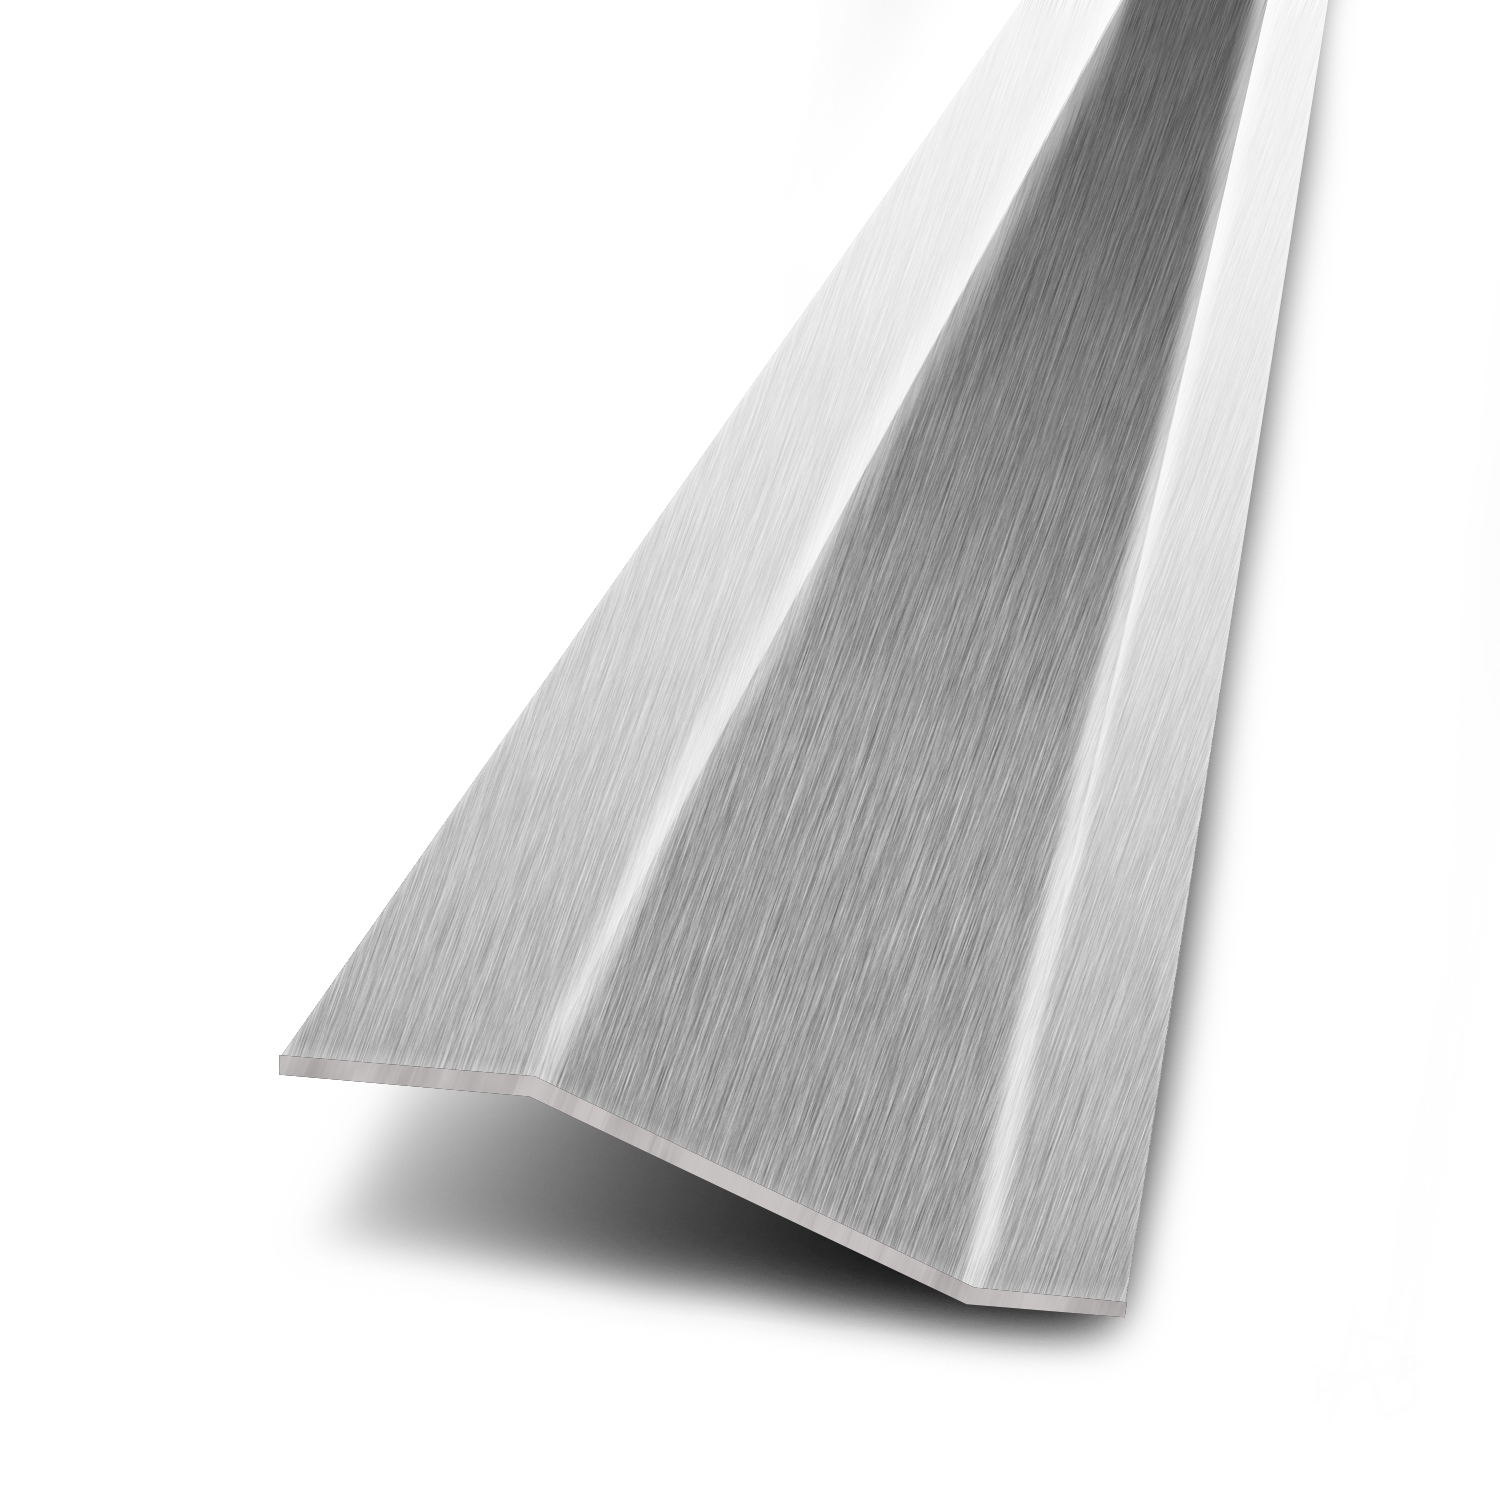 Seuil multi niveaux aluminium naturel + socle - 51mmx2,7m 